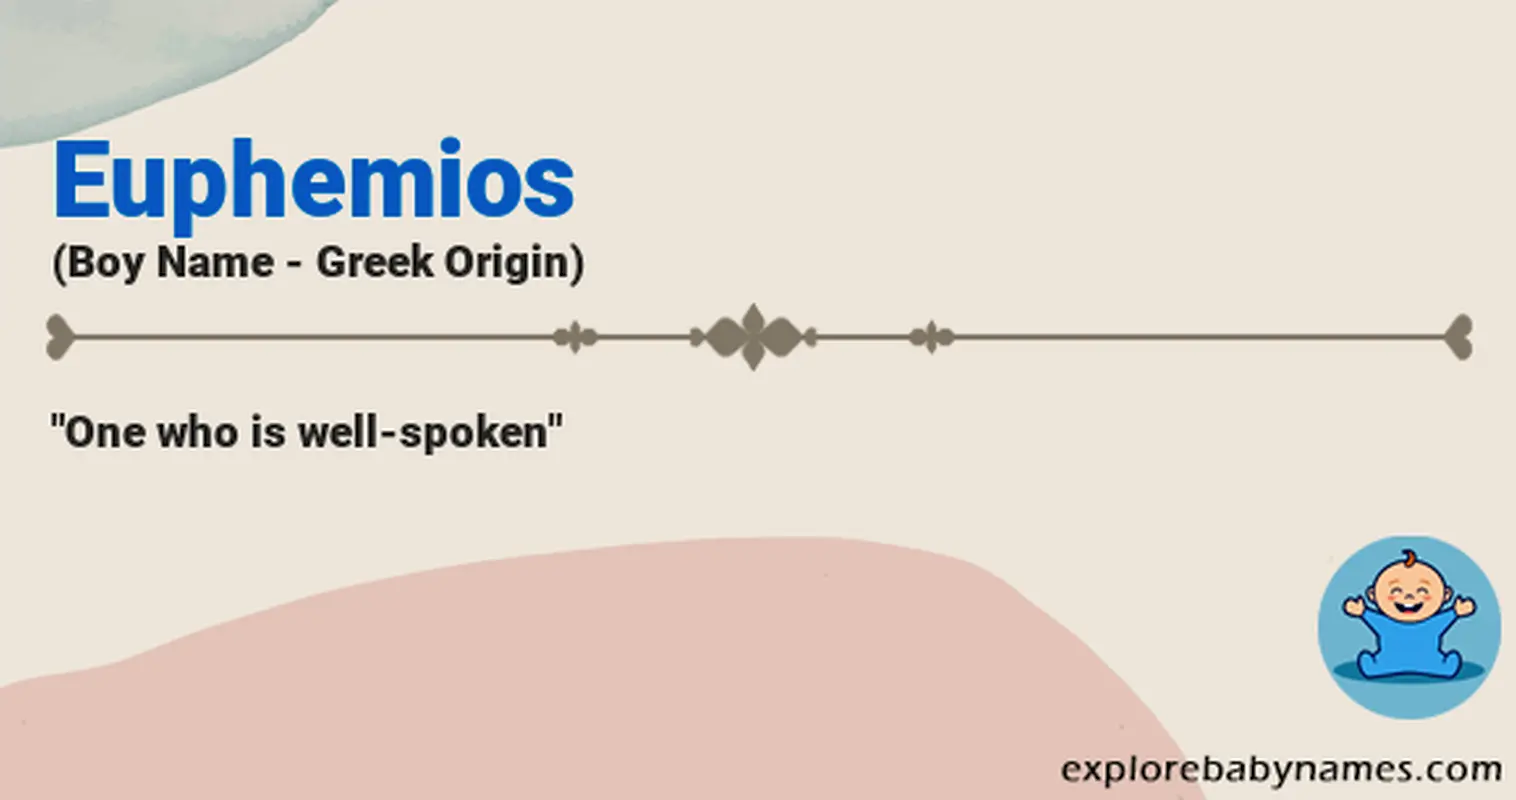 Meaning of Euphemios